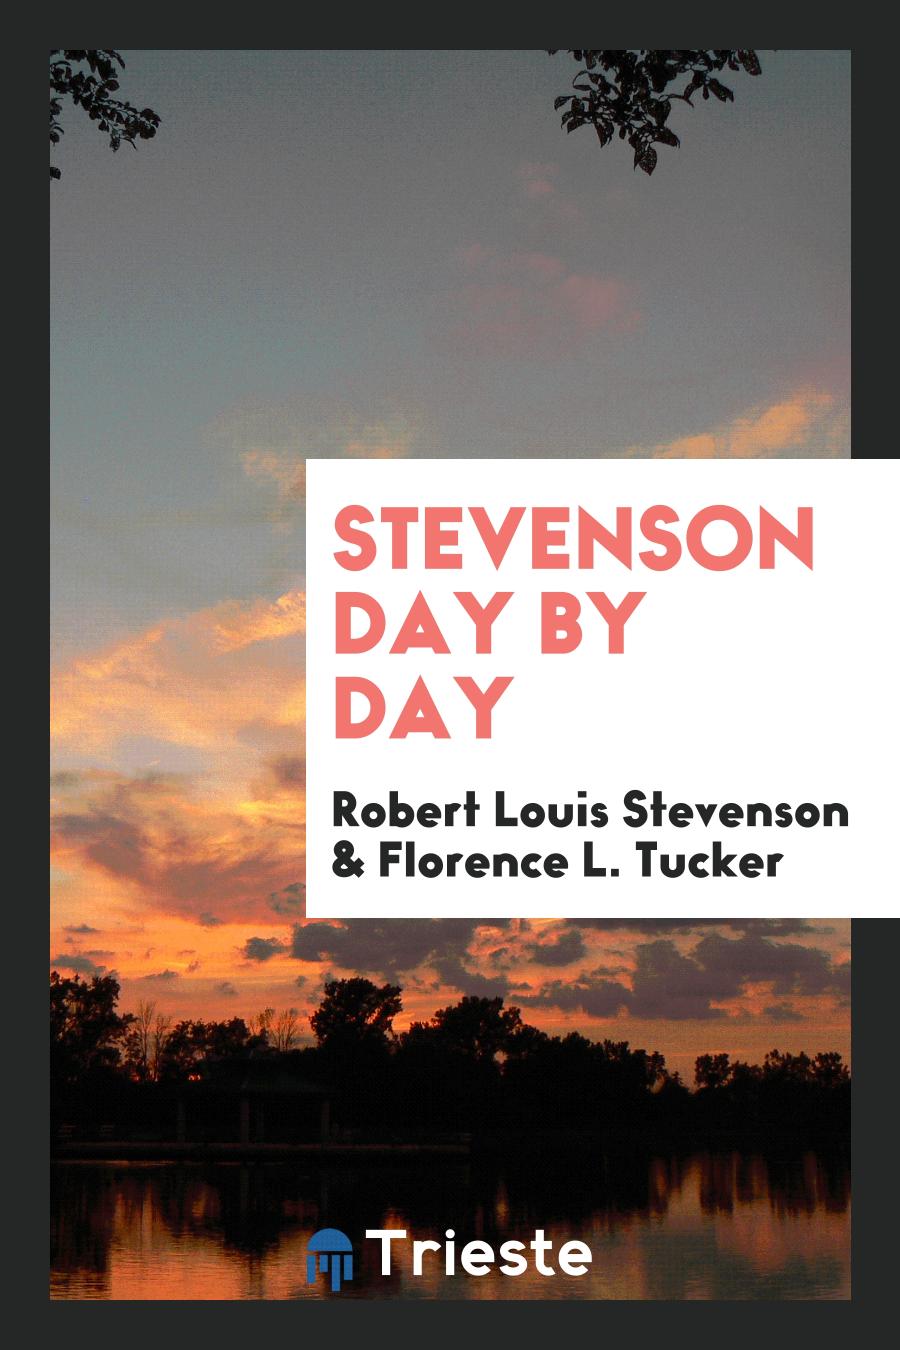 Stevenson Day by Day